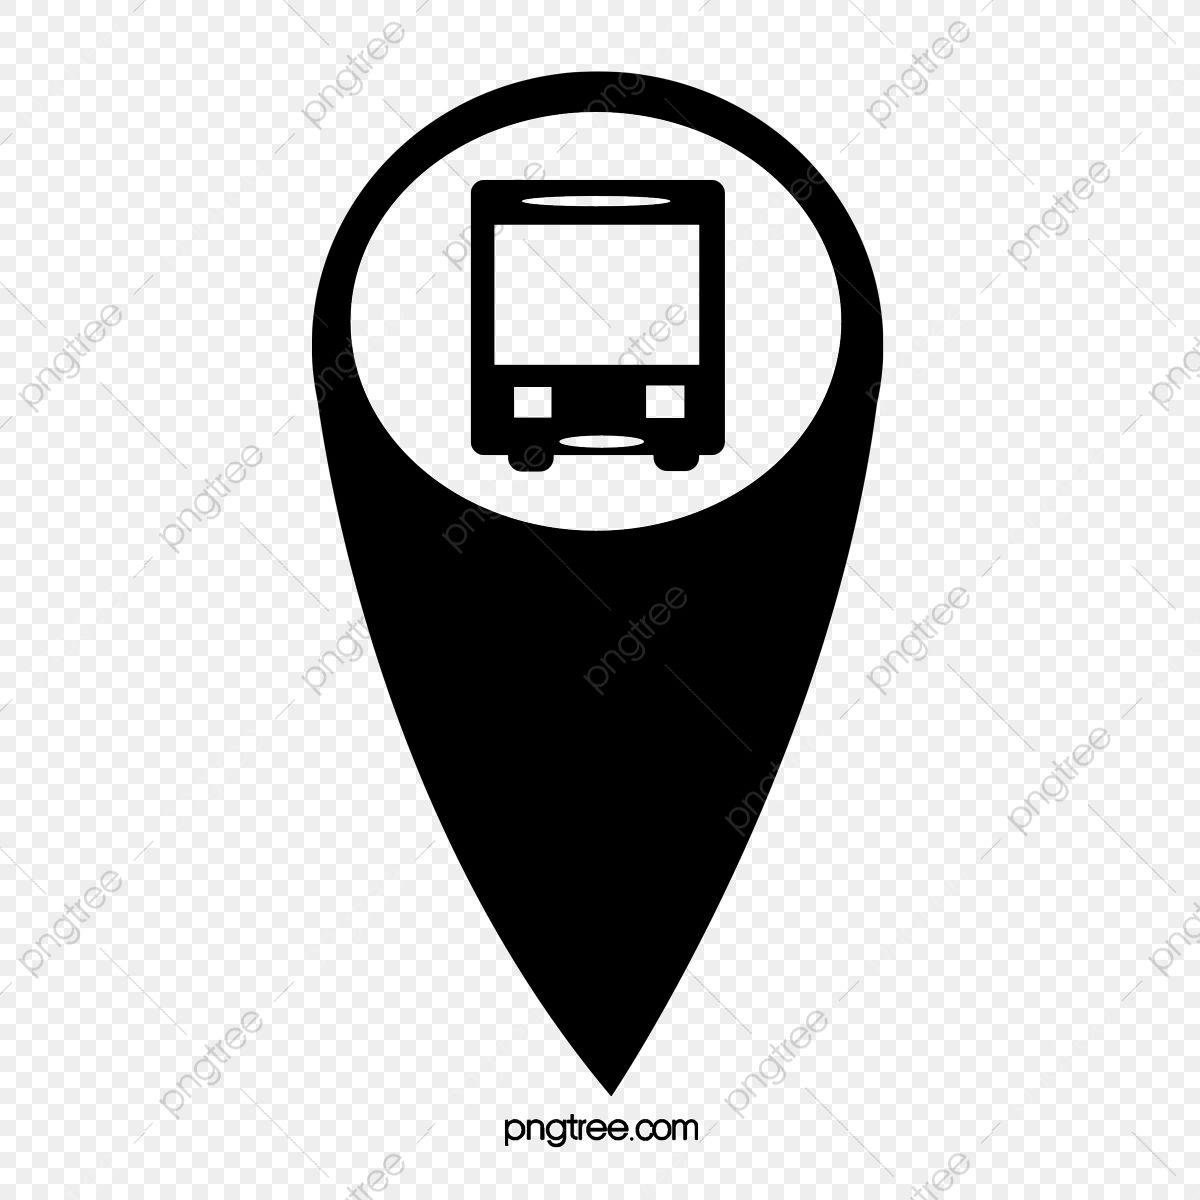 Bus Logo - Bus Positioning Logo, Logo Clipart, Bus Clipart, Bus PNG Transparent